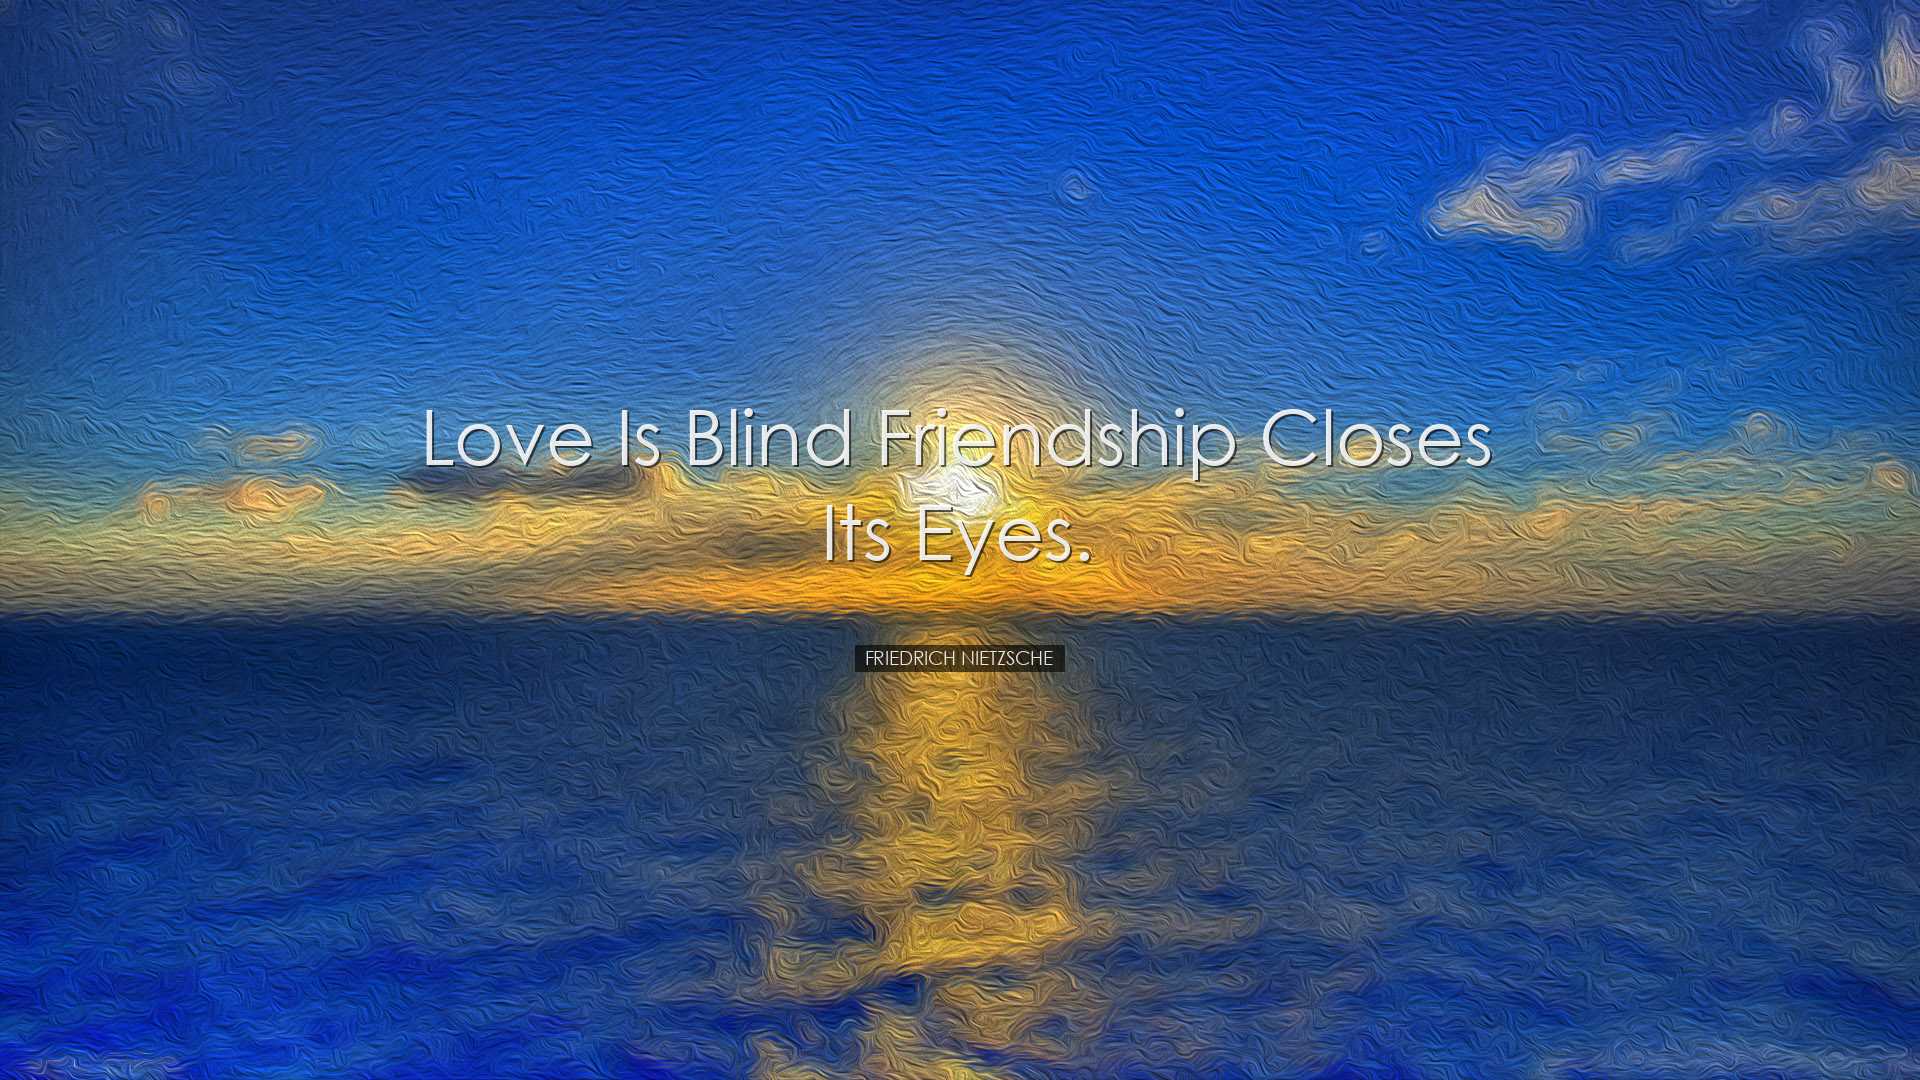 Love is blind friendship closes its eyes. - Friedrich Nietzsche